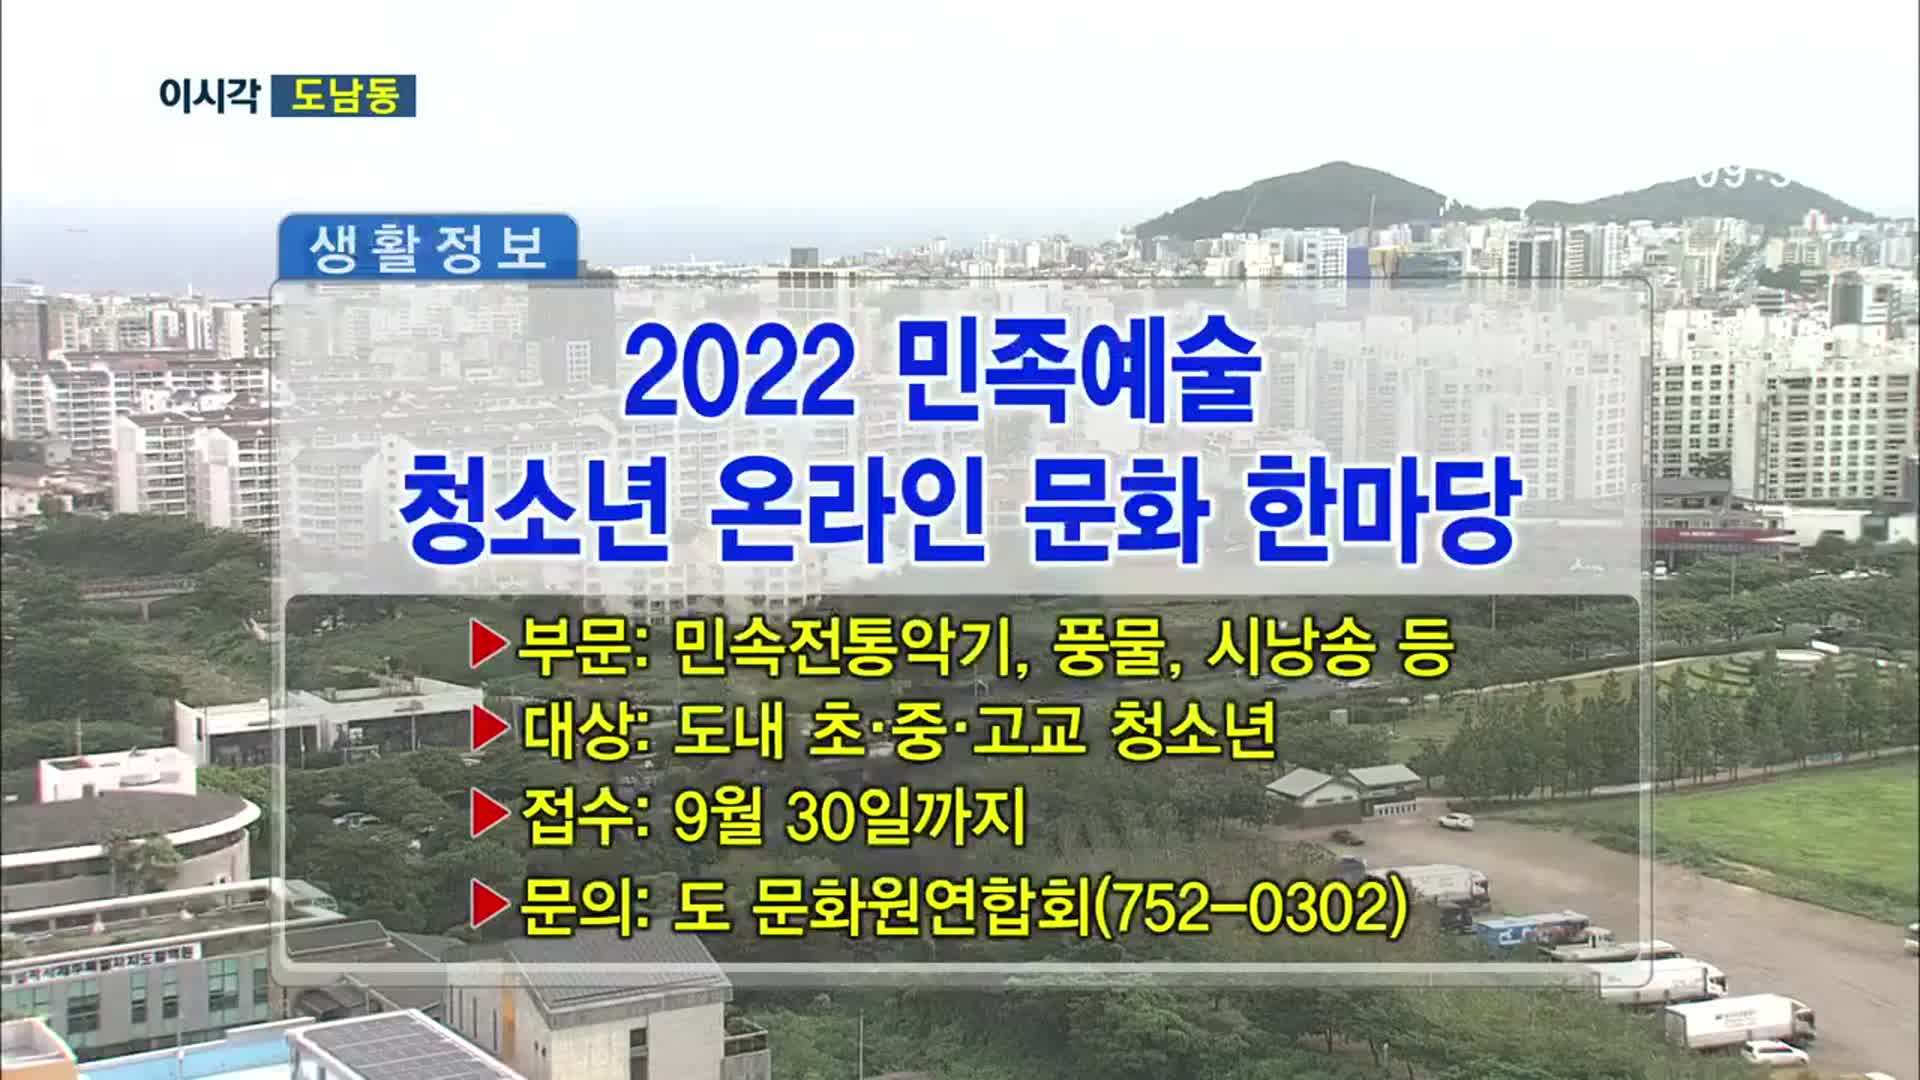 2022 민족예술 청소년 온라인 문화 한마당 외